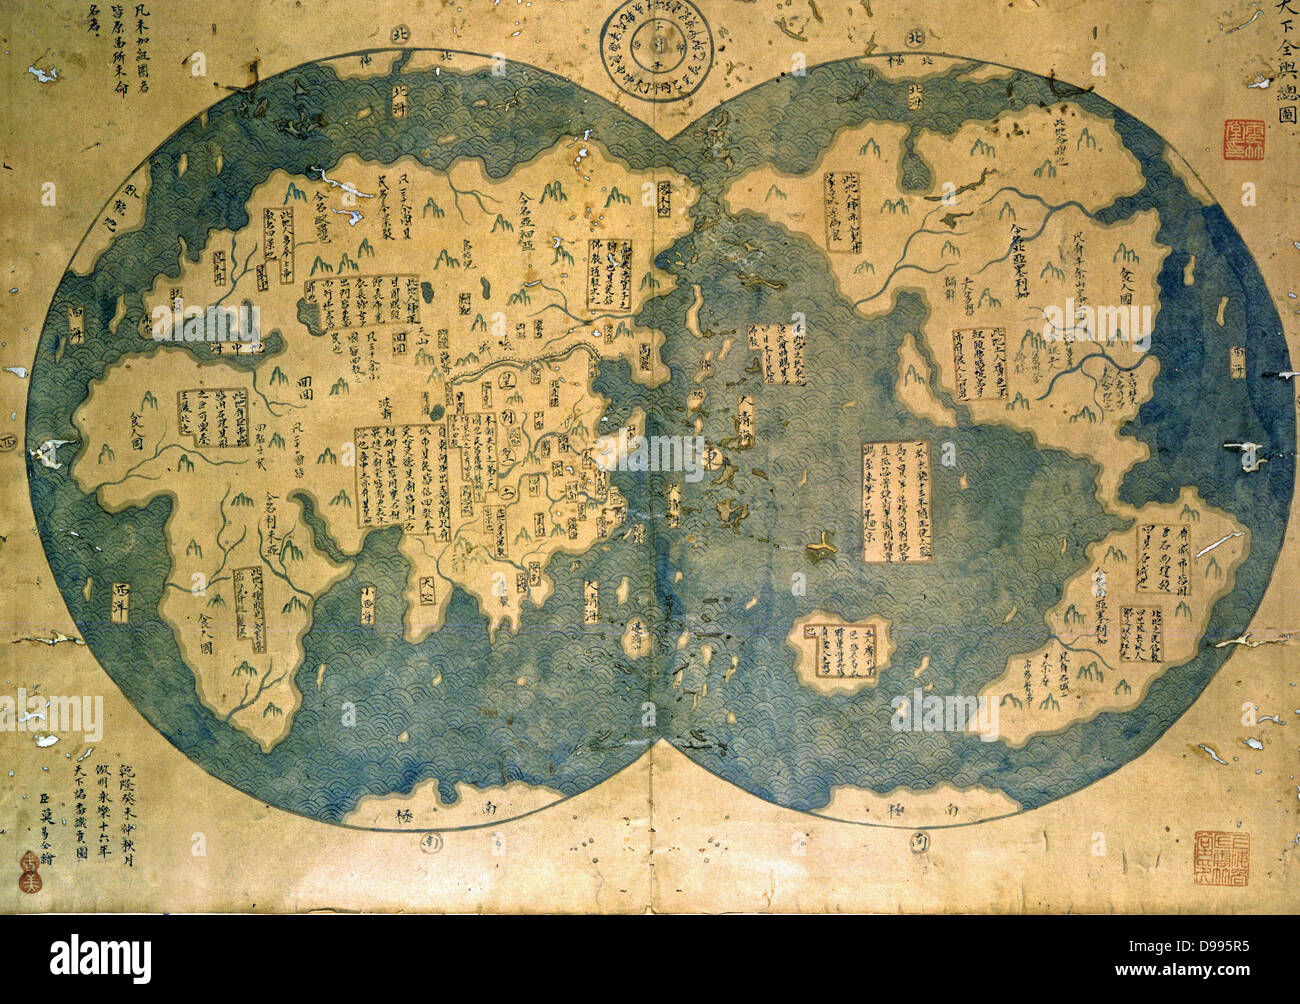 Welt Karte wird geglaubt, durch einige von Zheng He. Zheng He (1371-1435), oder Cheng Ho, die meisten berühmten navigator Chinas zusammengestellt zu haben. Ab Beginn des 15. Jahrhunderts, reiste er nach Westen sieben Mal. Für 28 Jahre, reiste er mehr als 50.000 km und besuchten über 30 Ländern, darunter in Singapur. Stockfoto